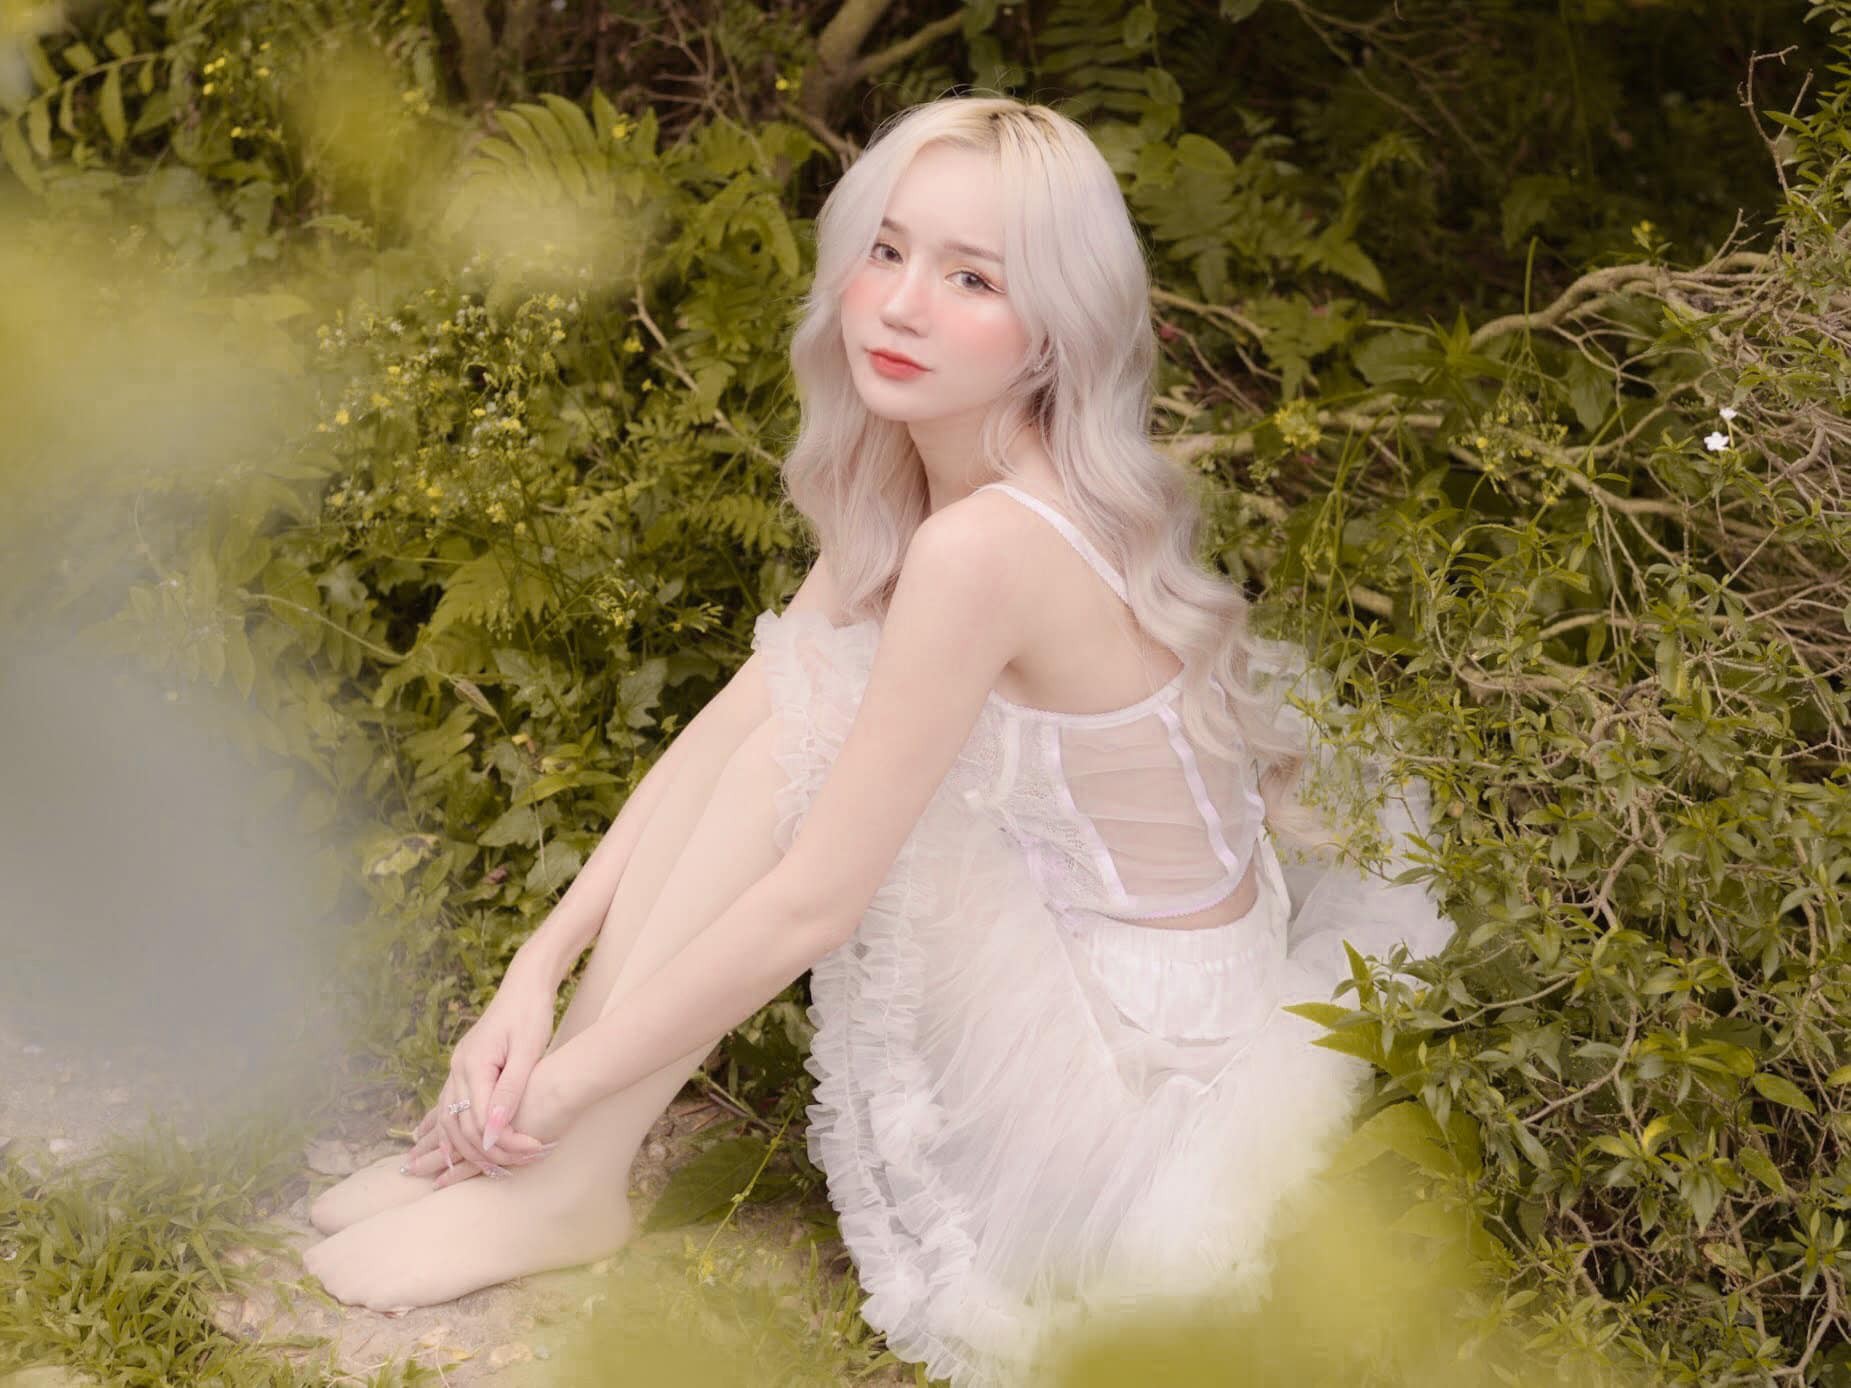 Nữ streamer tóc bạch kim lộ body, netizen hết lời khen ngợi - Hình 3